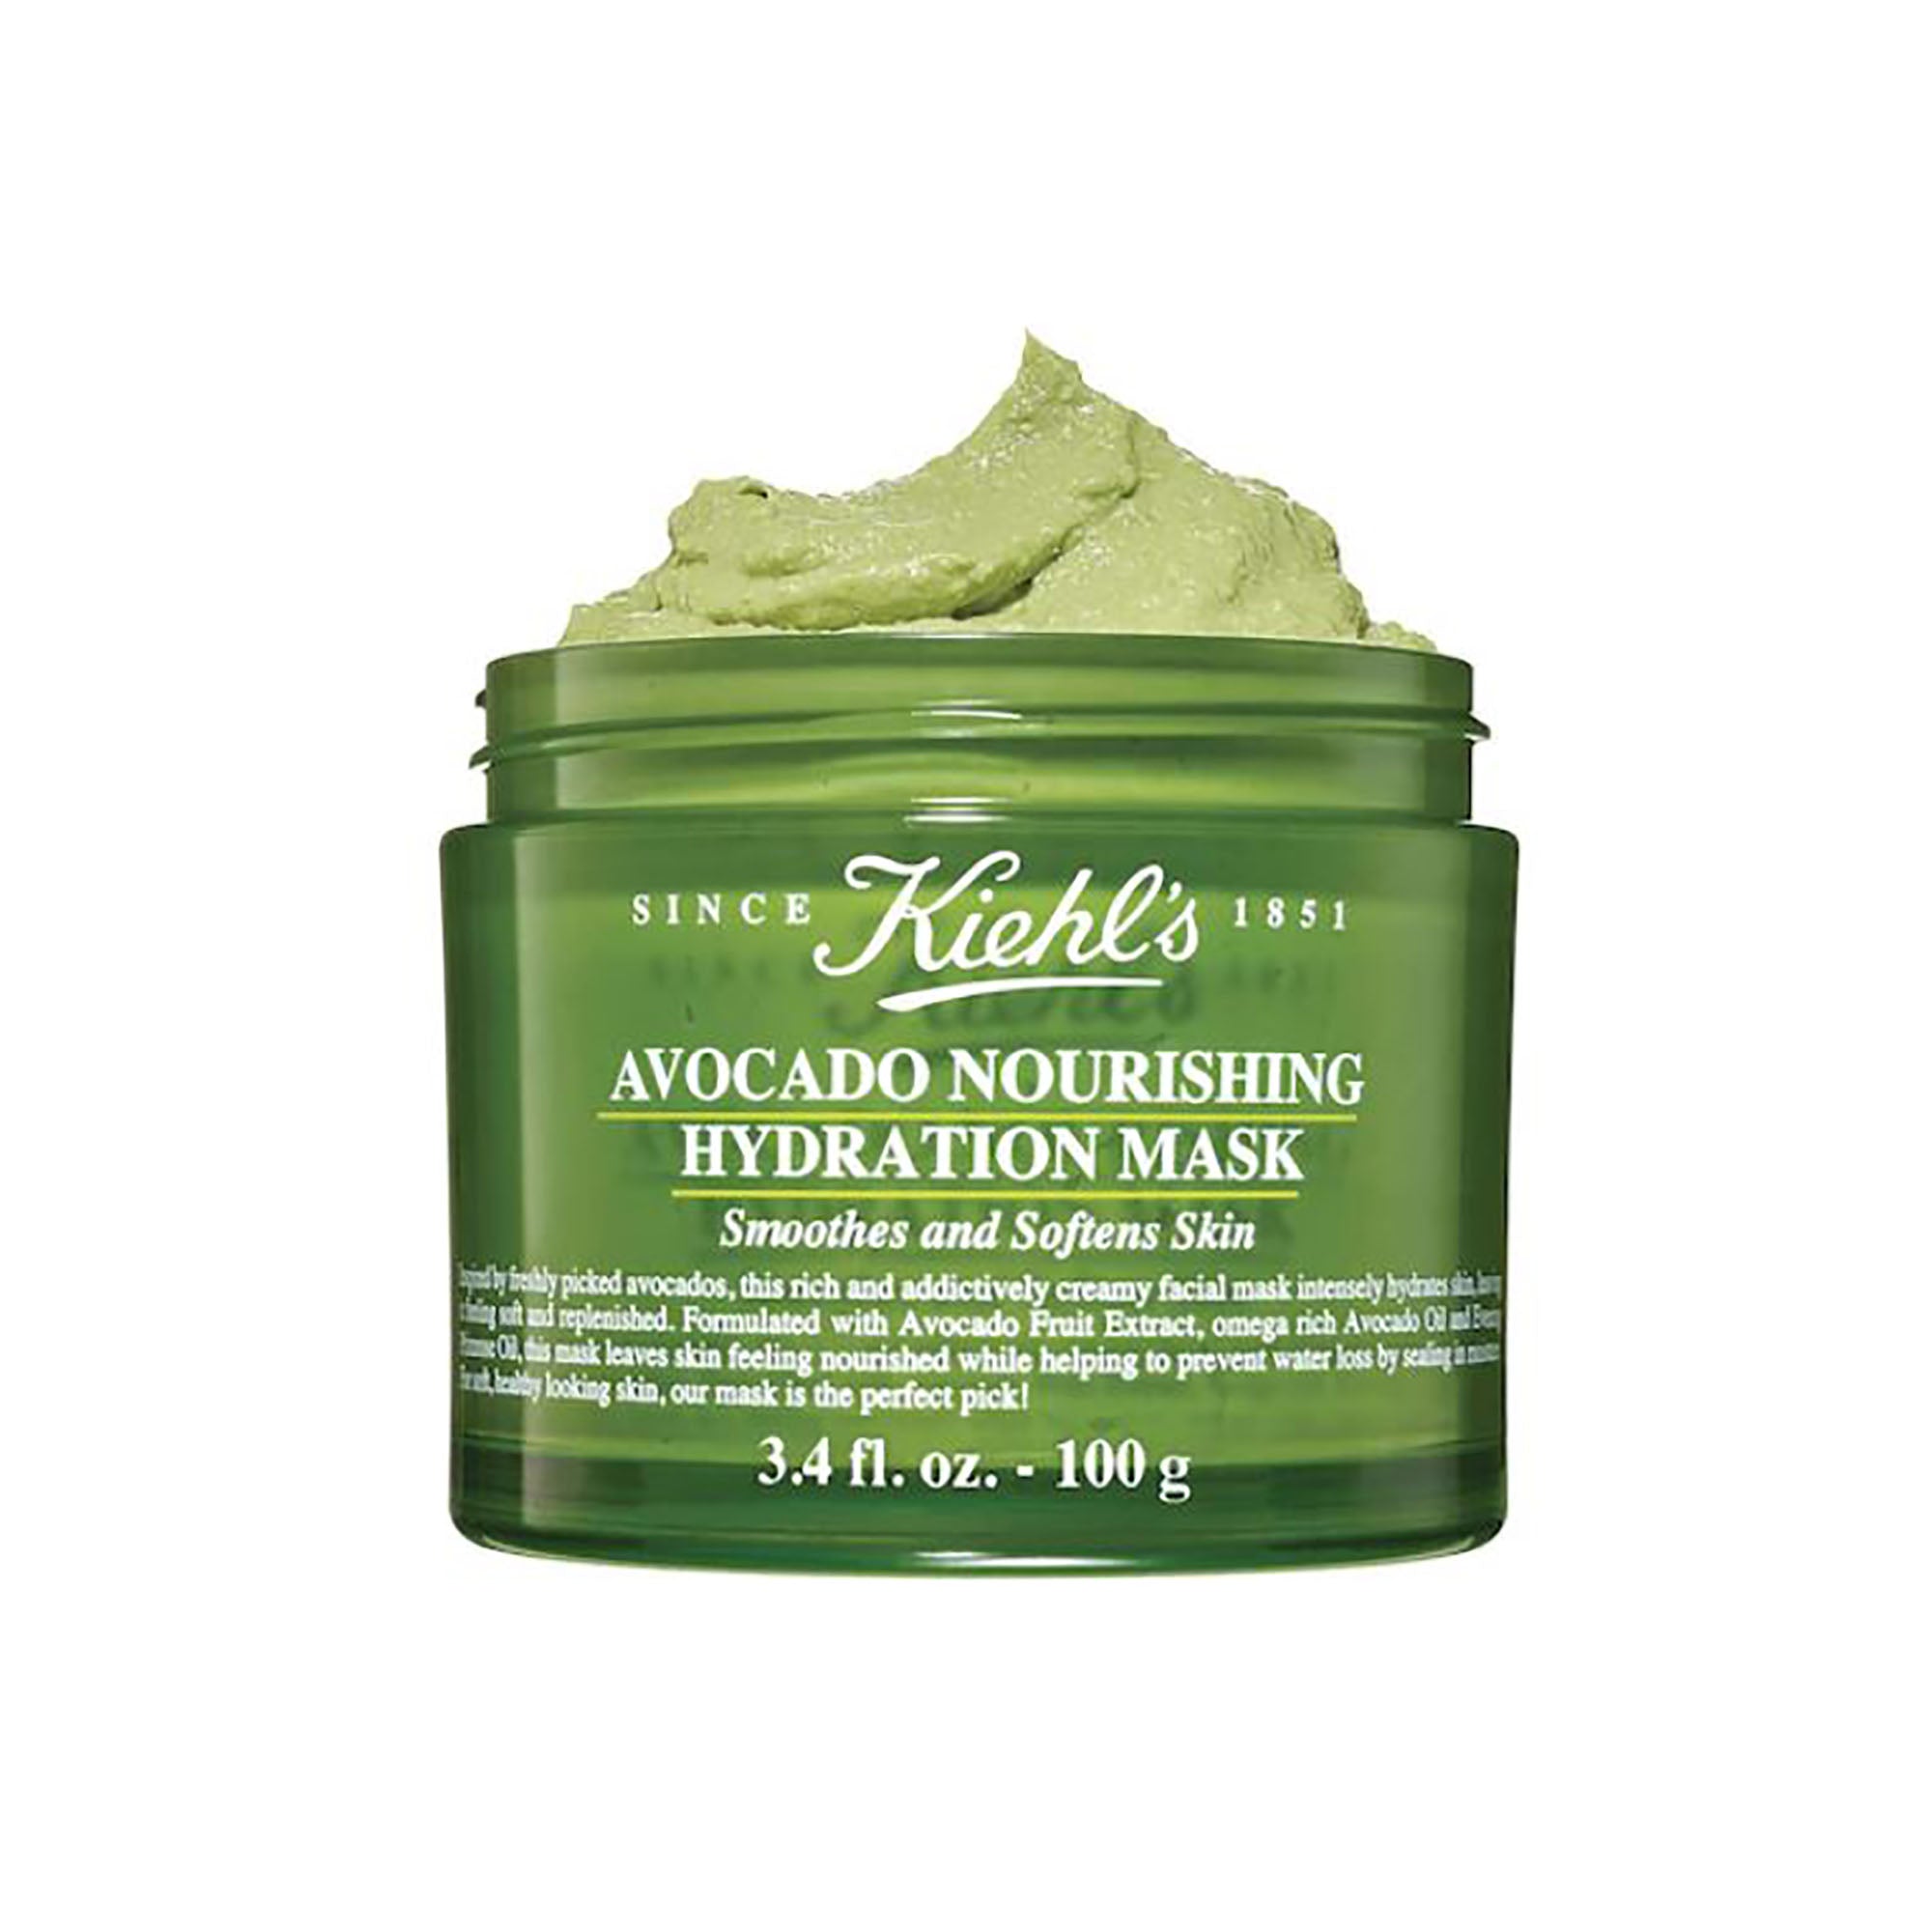 Kiehl's Avocado Nourishing Hydration Mask / 3.4OZ